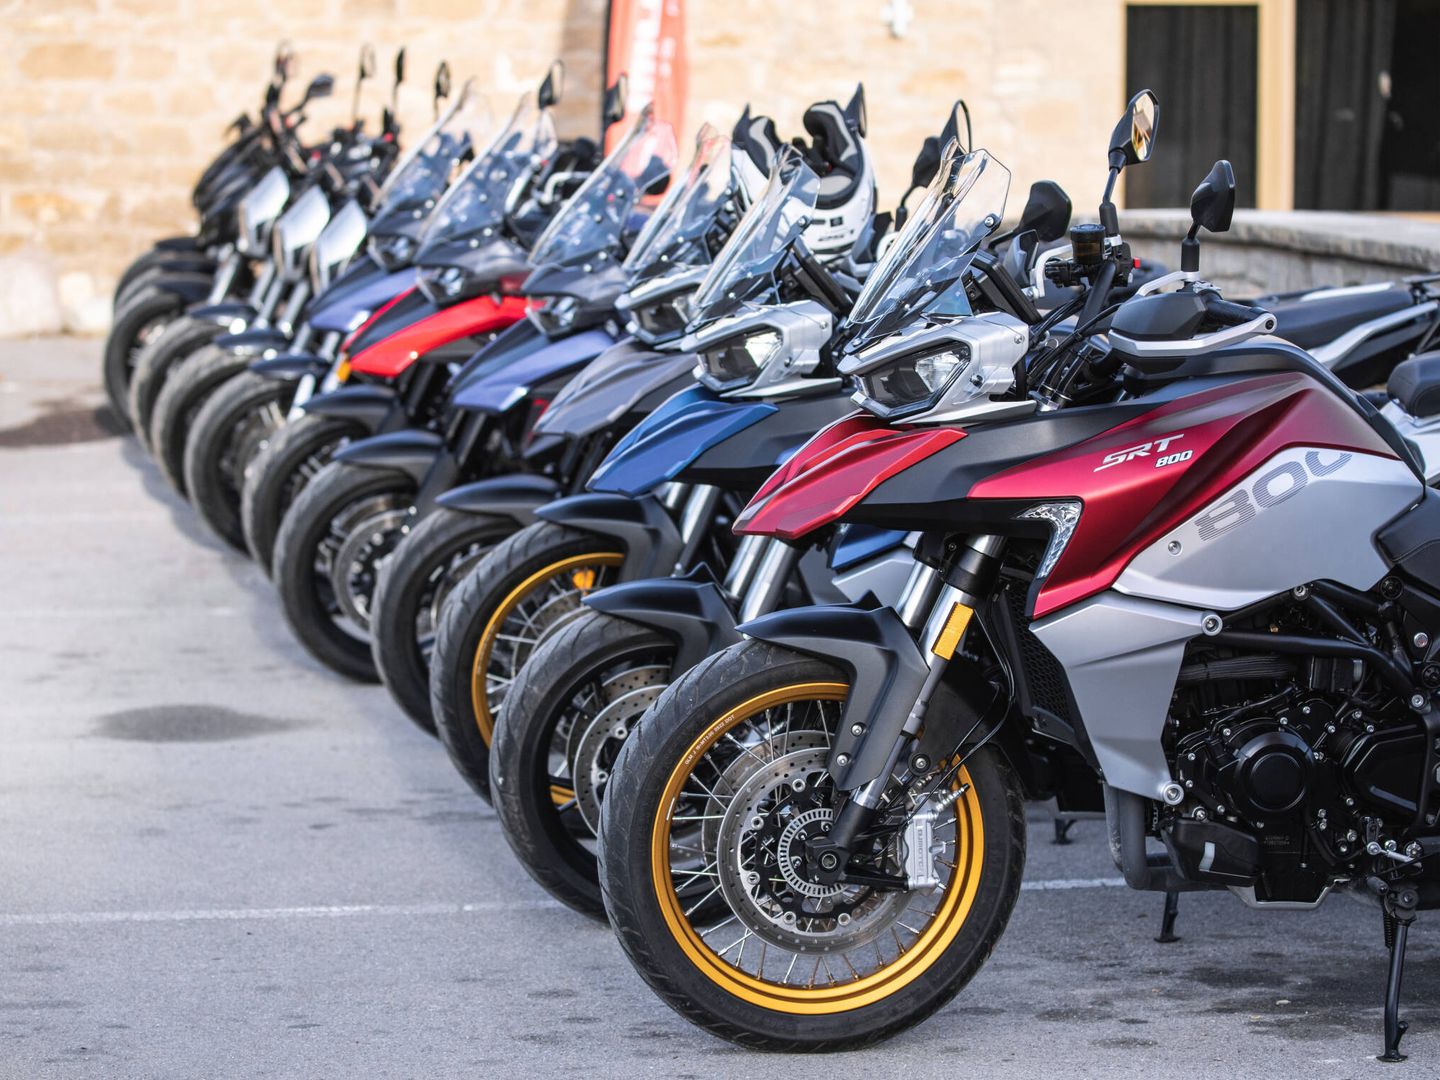 El aumento de ventas de motos en los últimos años supera con creces el de sus accidentes.